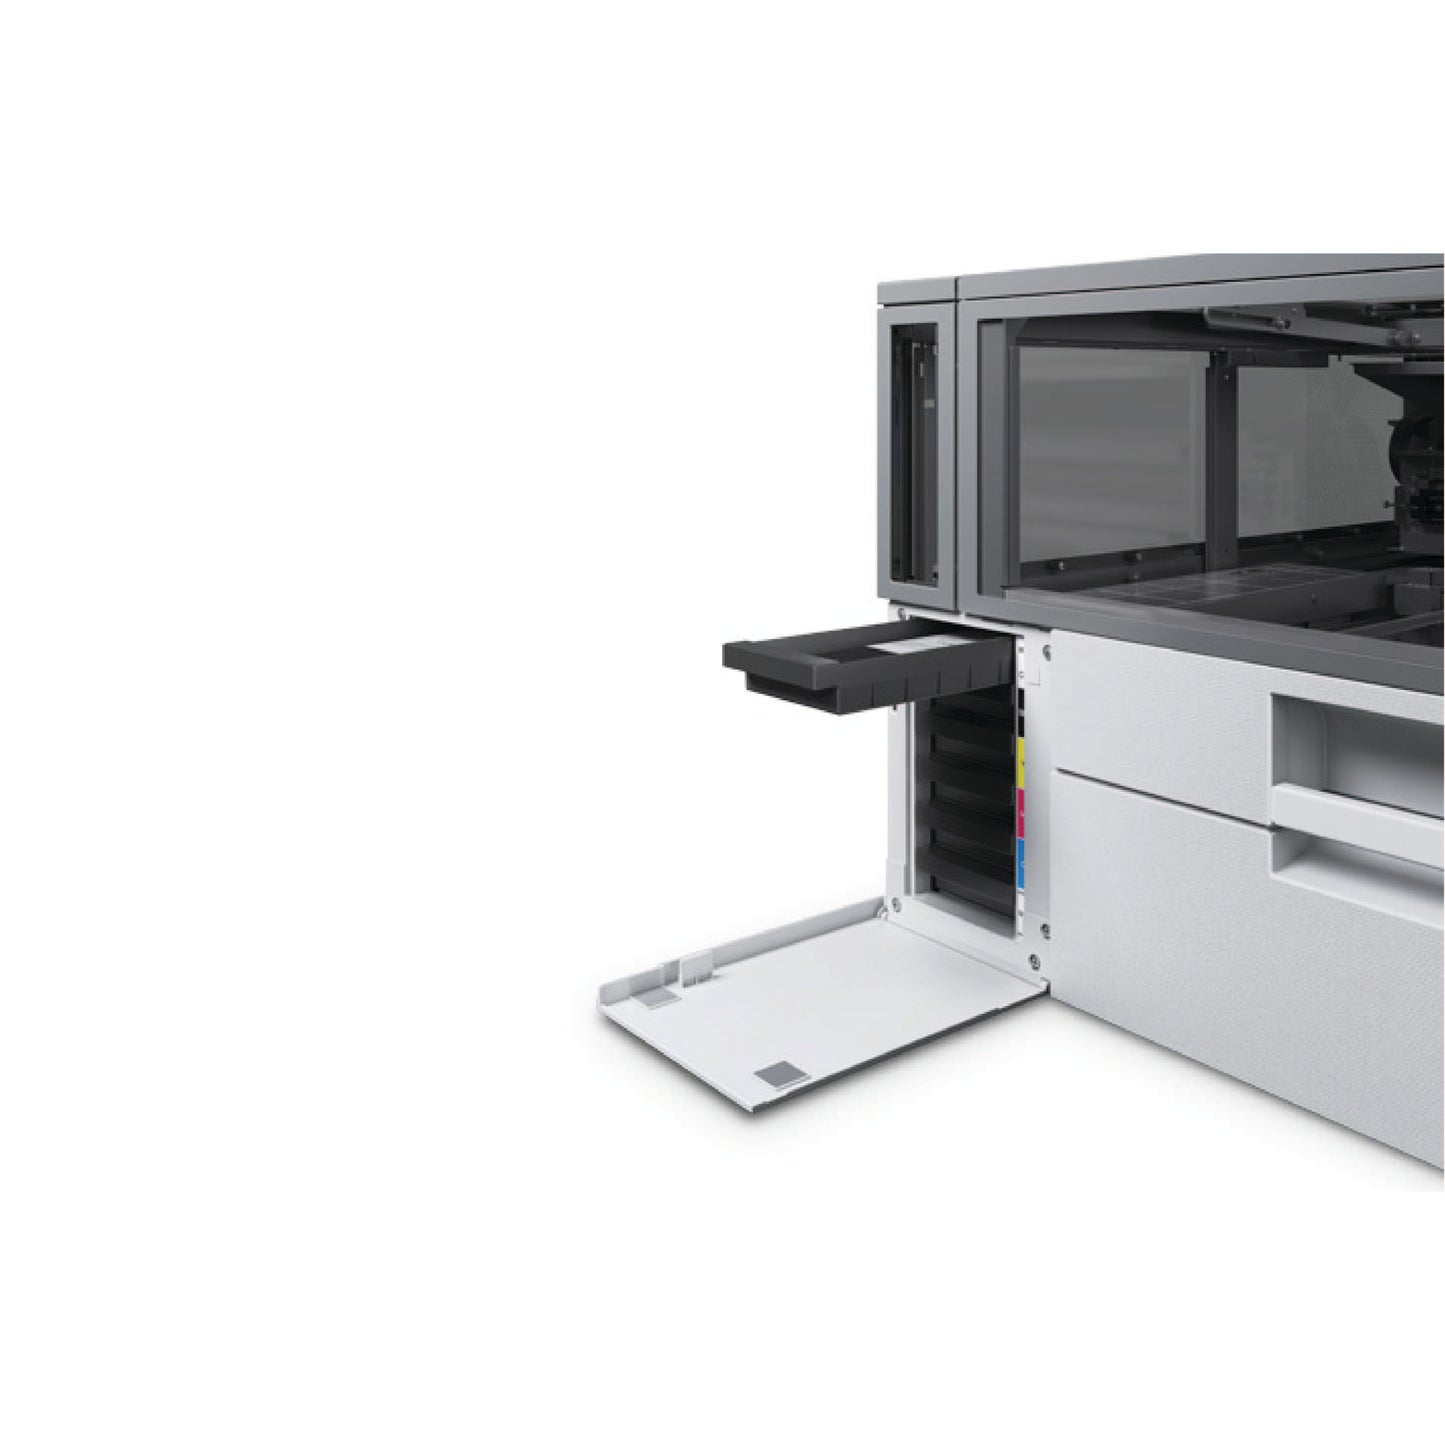 *PRE-ORDER* Epson® SureColor F1070 - DTG & DTF Hybrid Printer